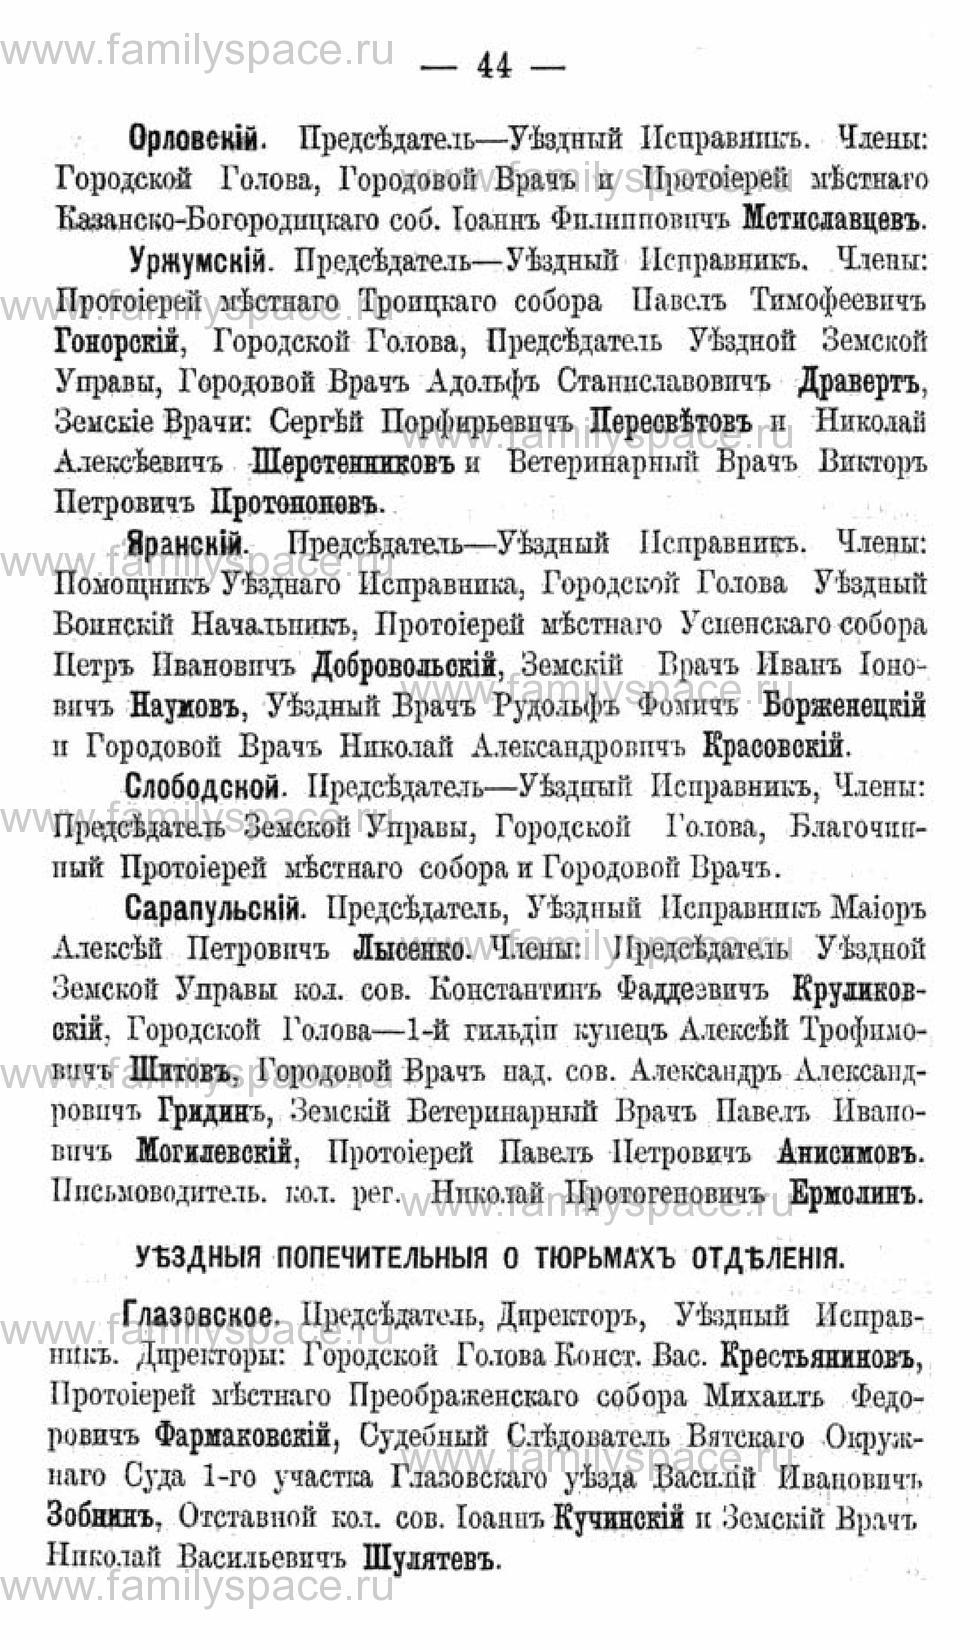 Поиск по фамилии - Календарь Вятской губернии - 1880, страница 3044